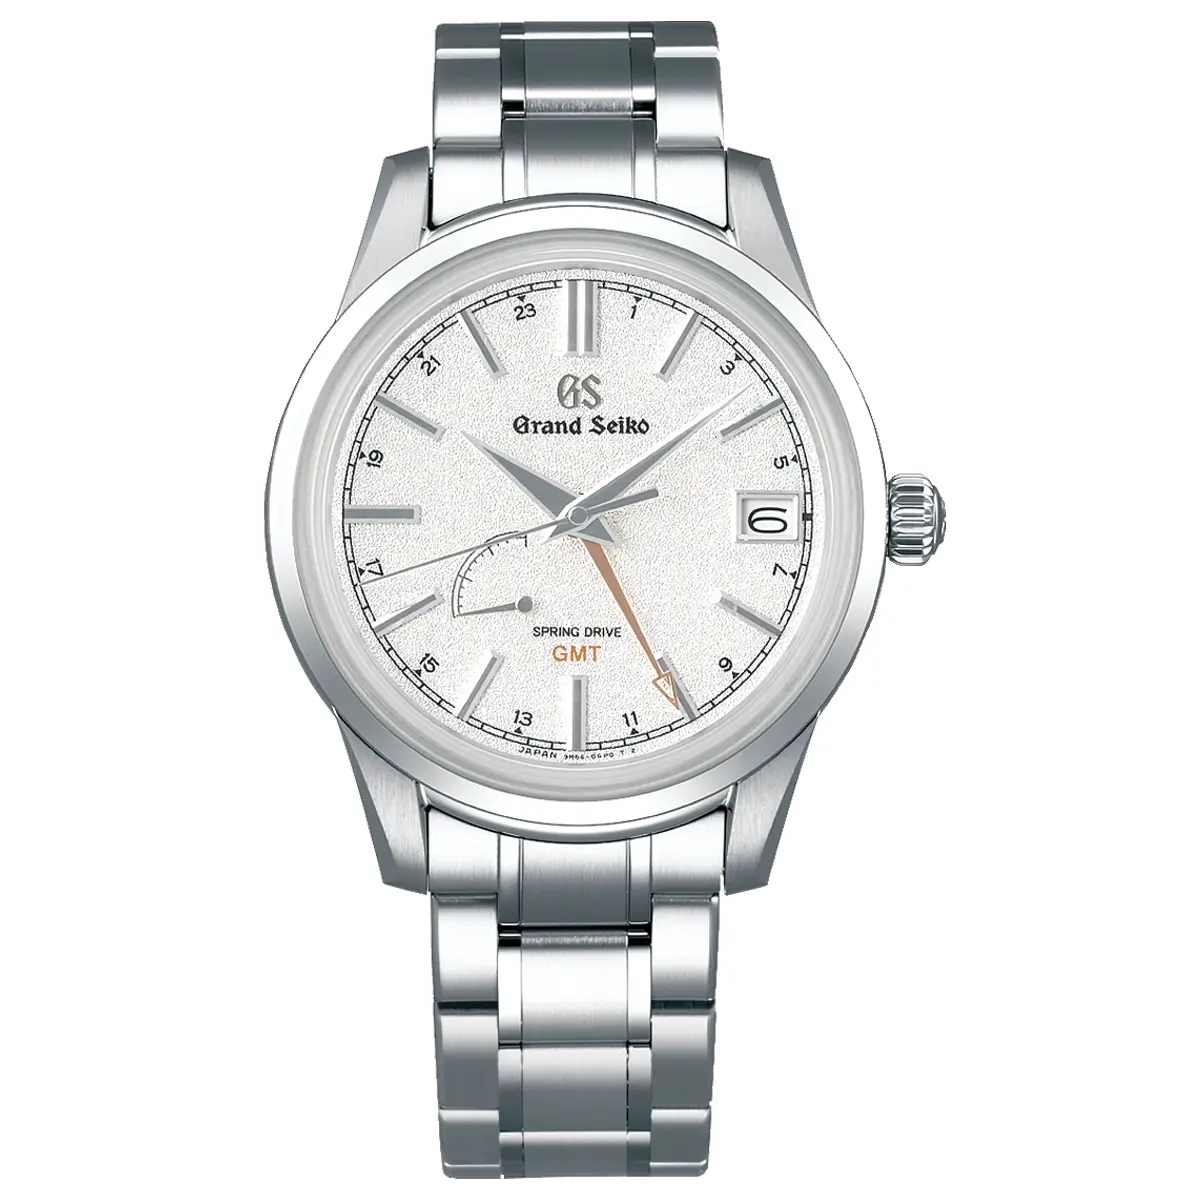 Đồng hồ Grand Seiko Elegance GMT 4 Seasons Collection SBGE269 mặt số màu bạc. Dây đeo bằng thép. Thân vỏ bằng thép.